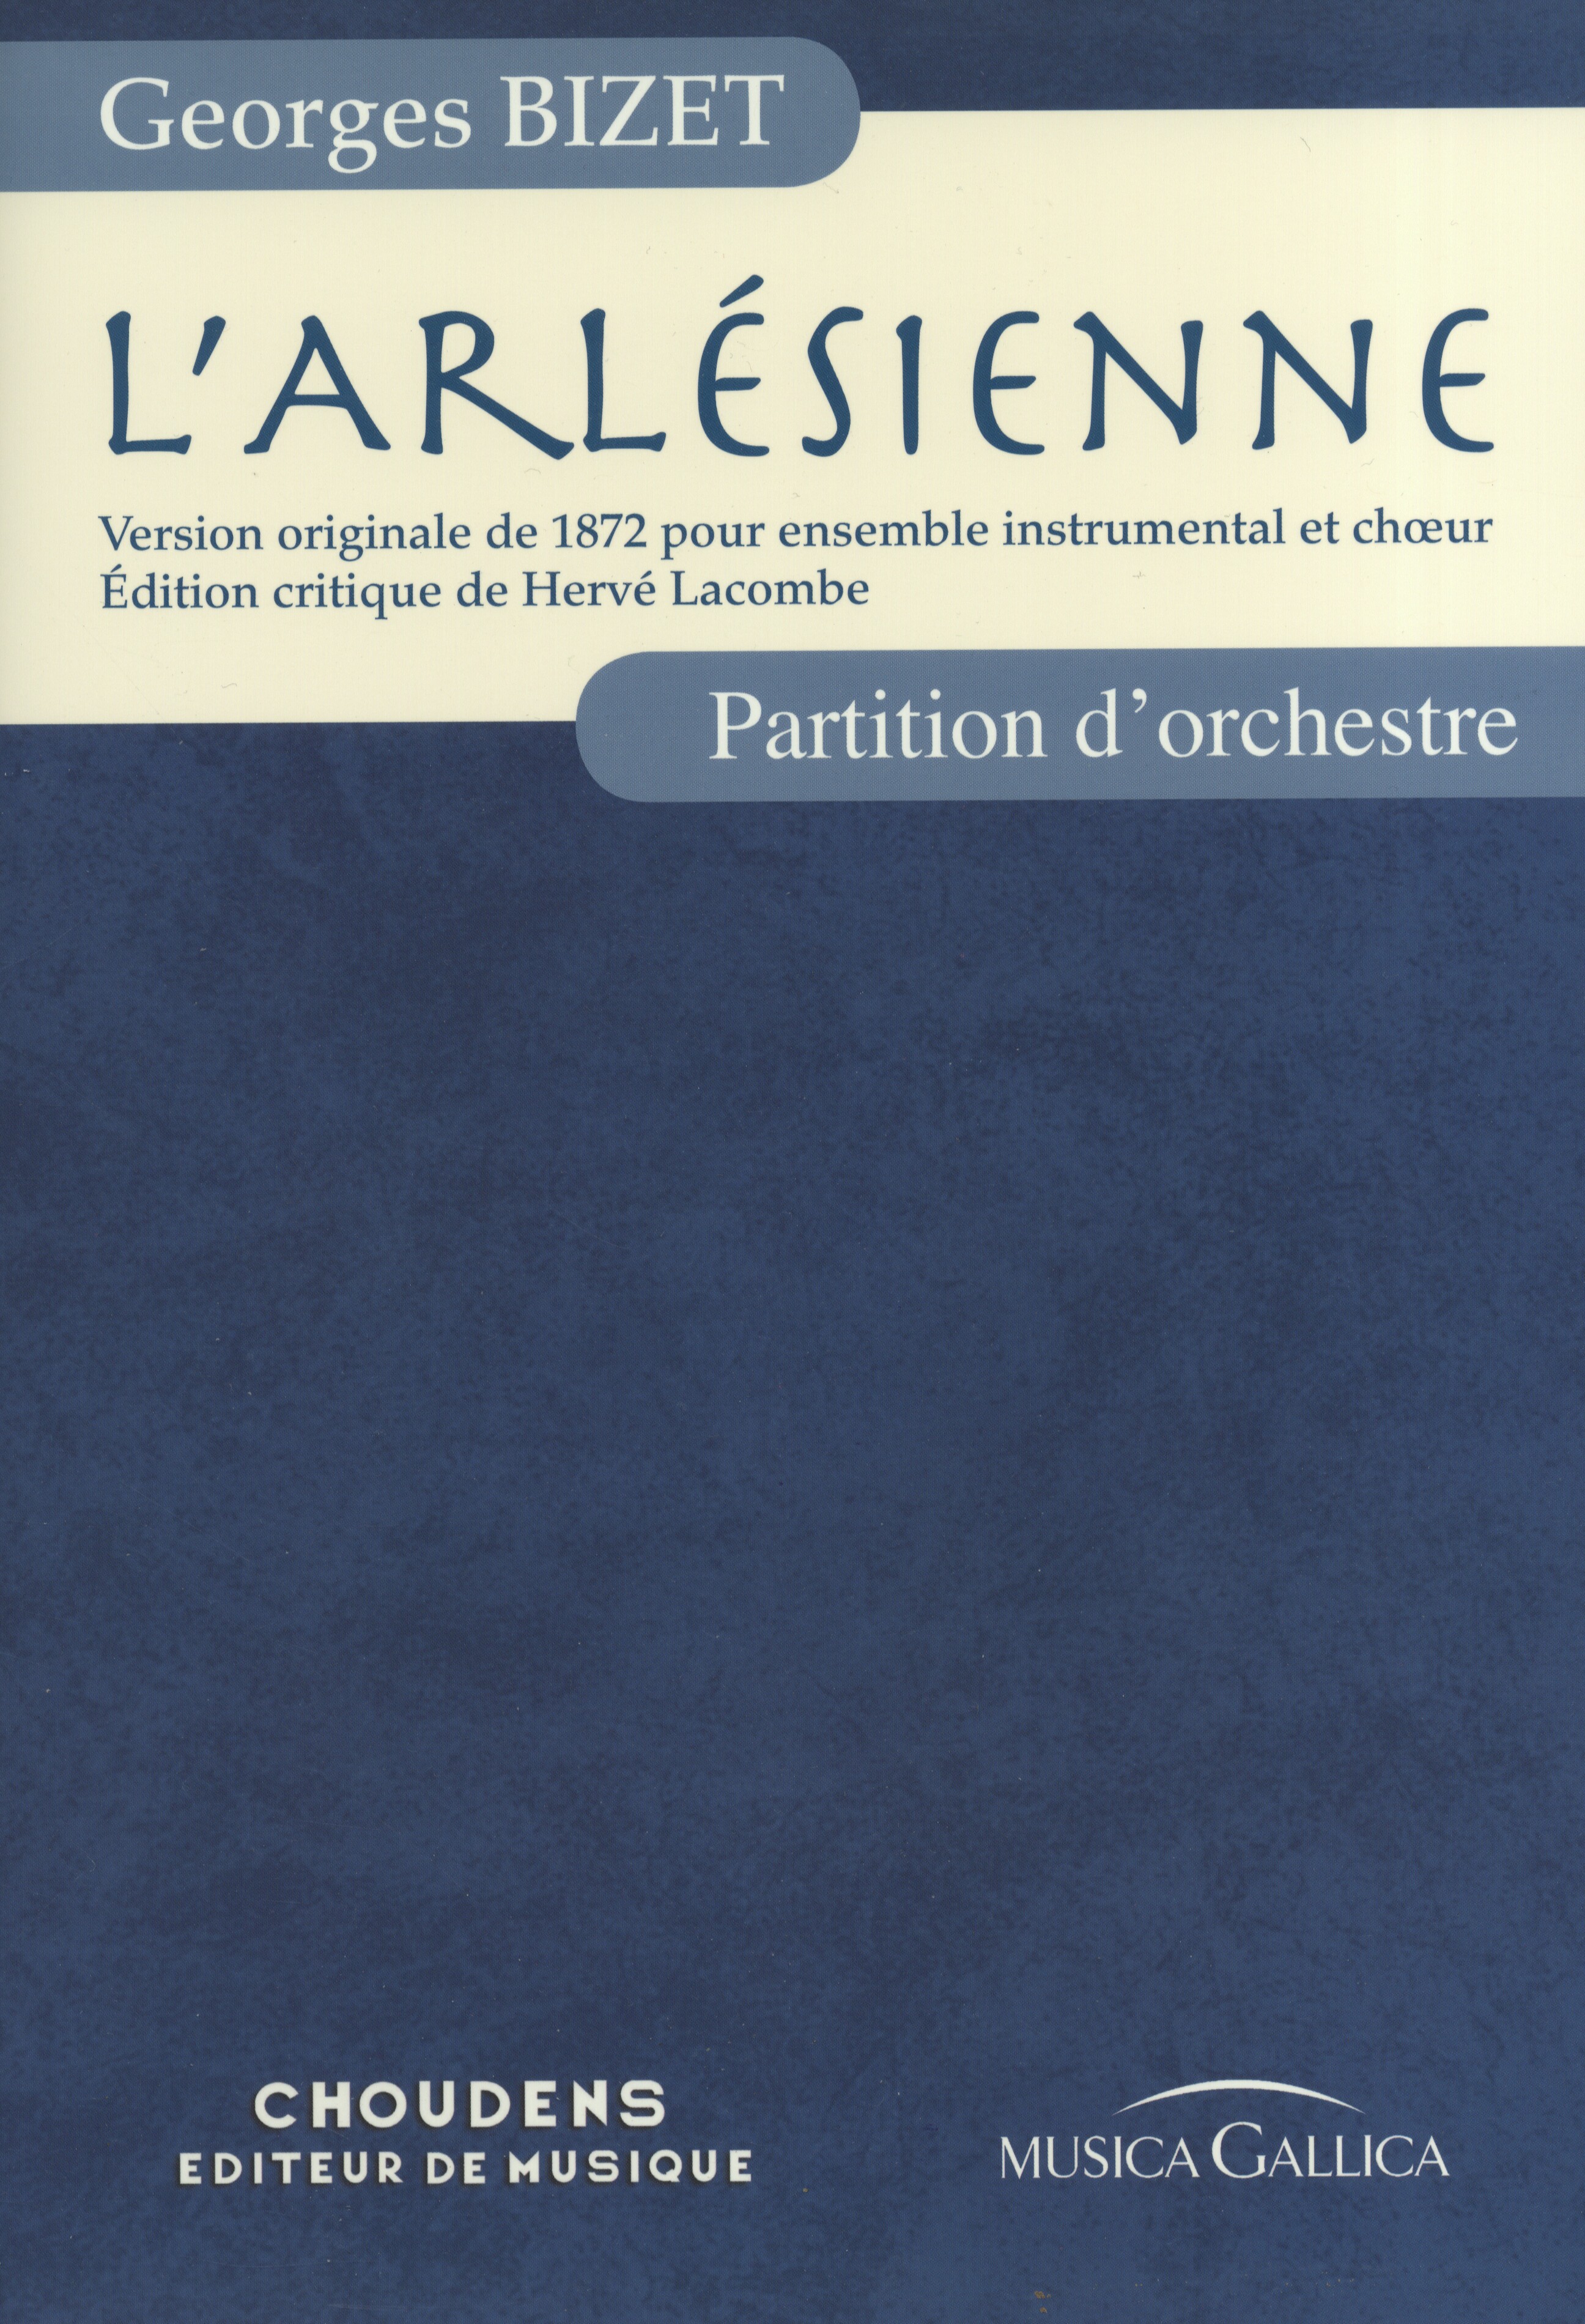 Georges Bizet: L'Arlsienne - Partition d'Orchestre: Orchestra: Score